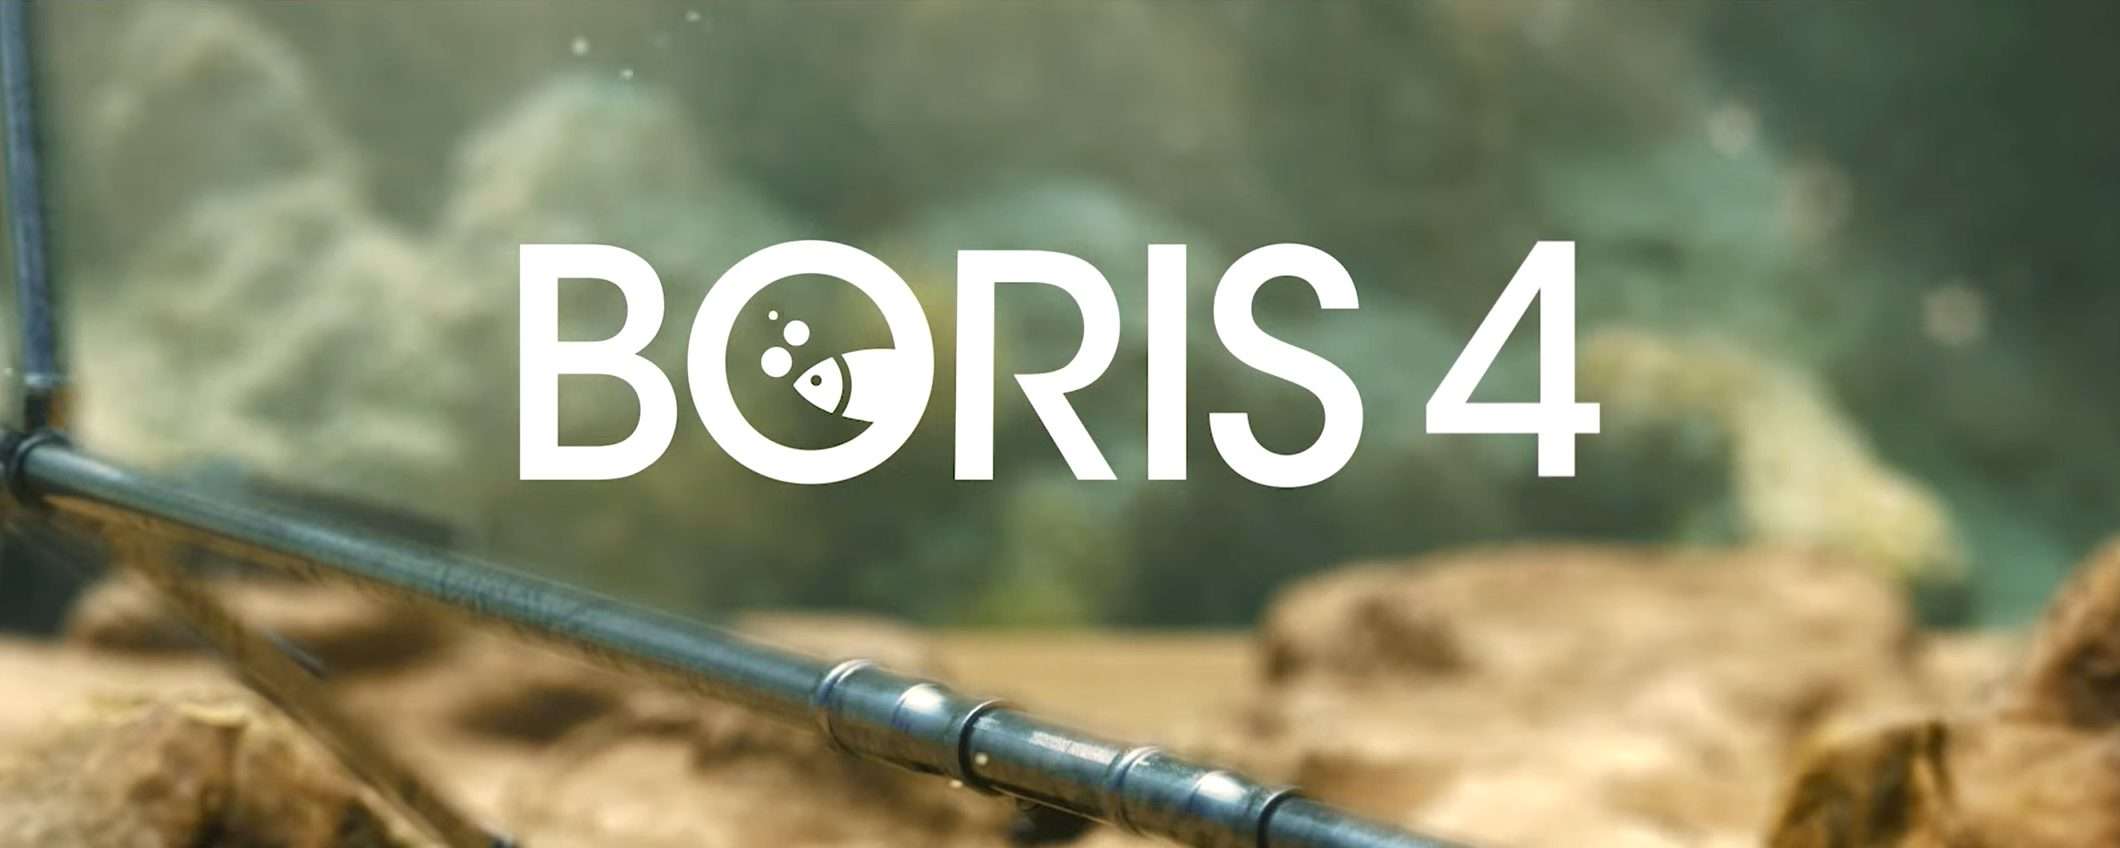 Boris 4 è in streaming: guarda tutti gli episodi